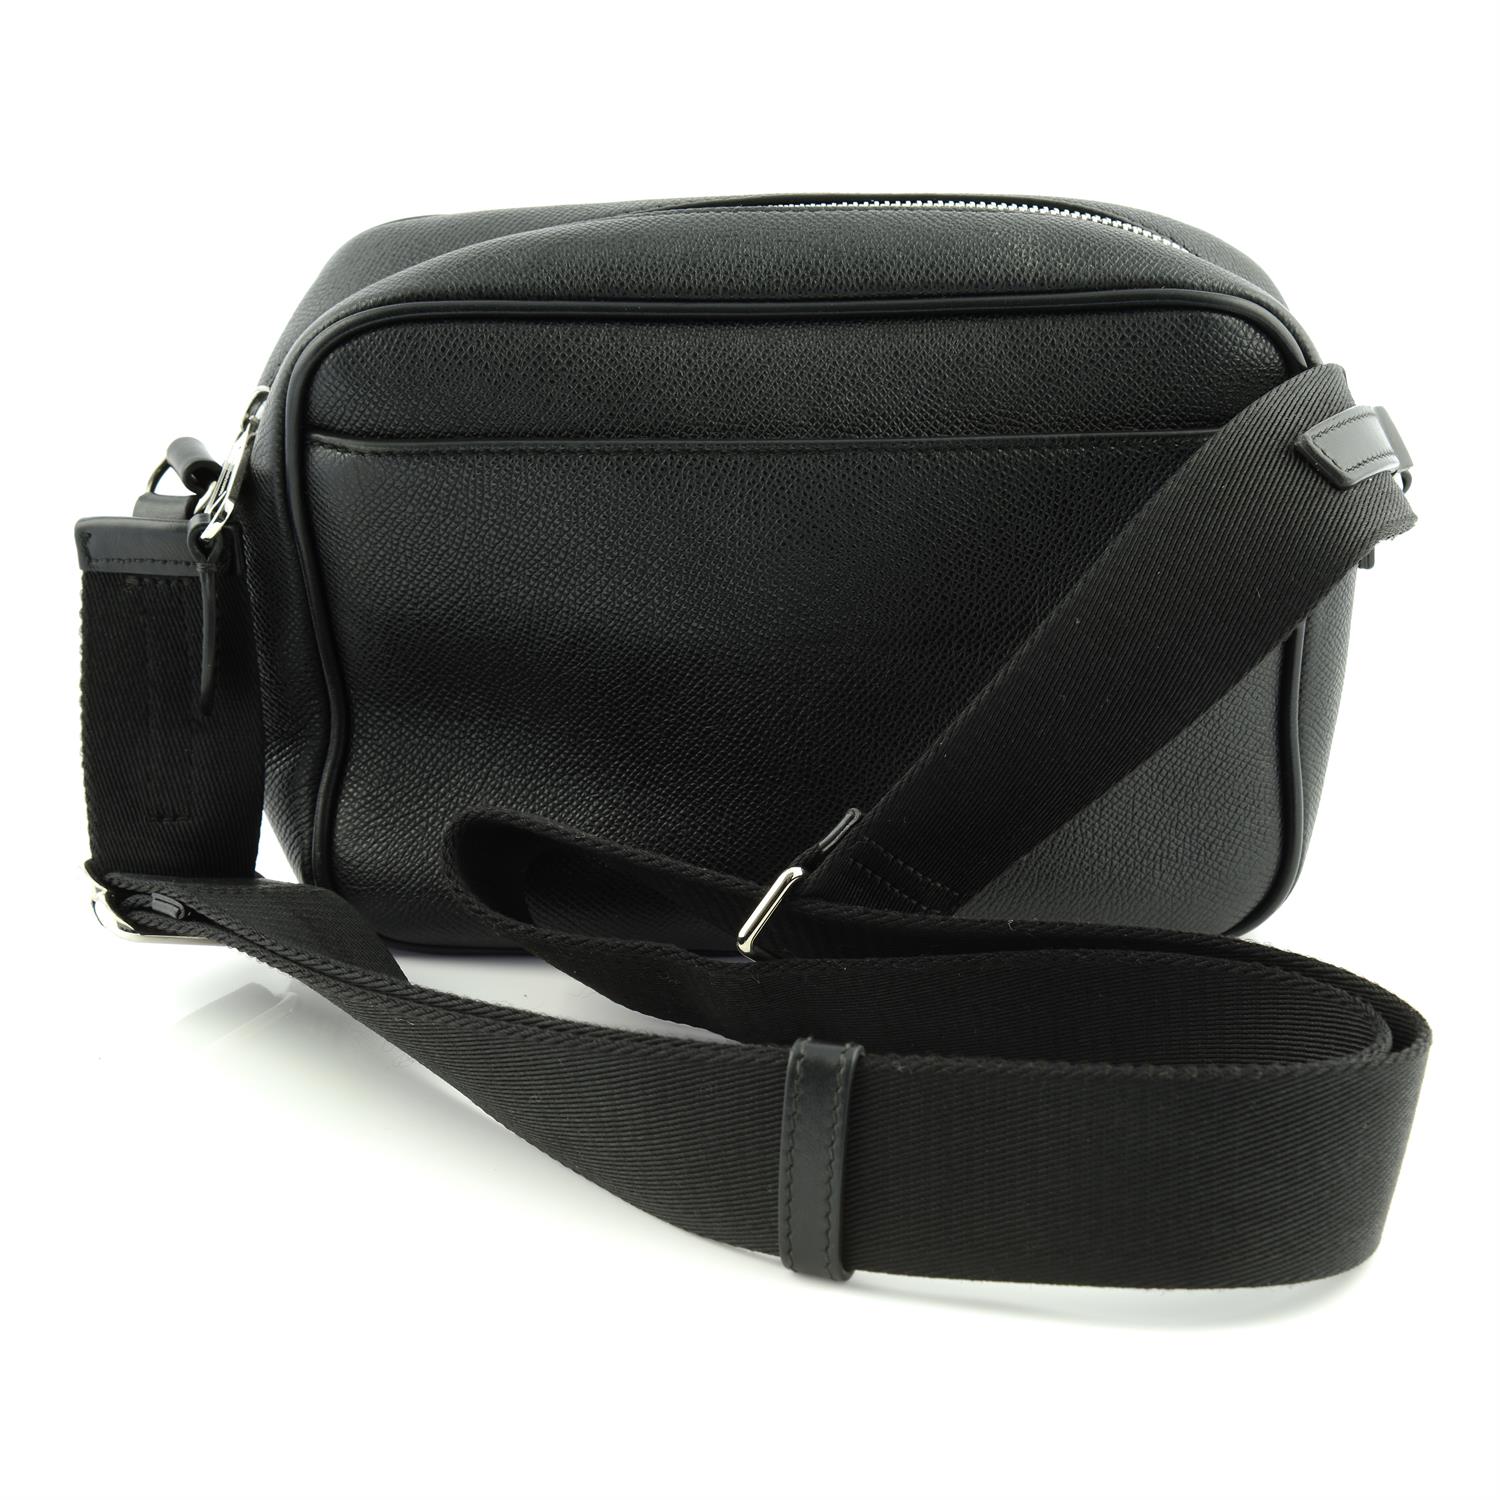 BURBERRY - a black leather camera handbag. - Image 2 of 6